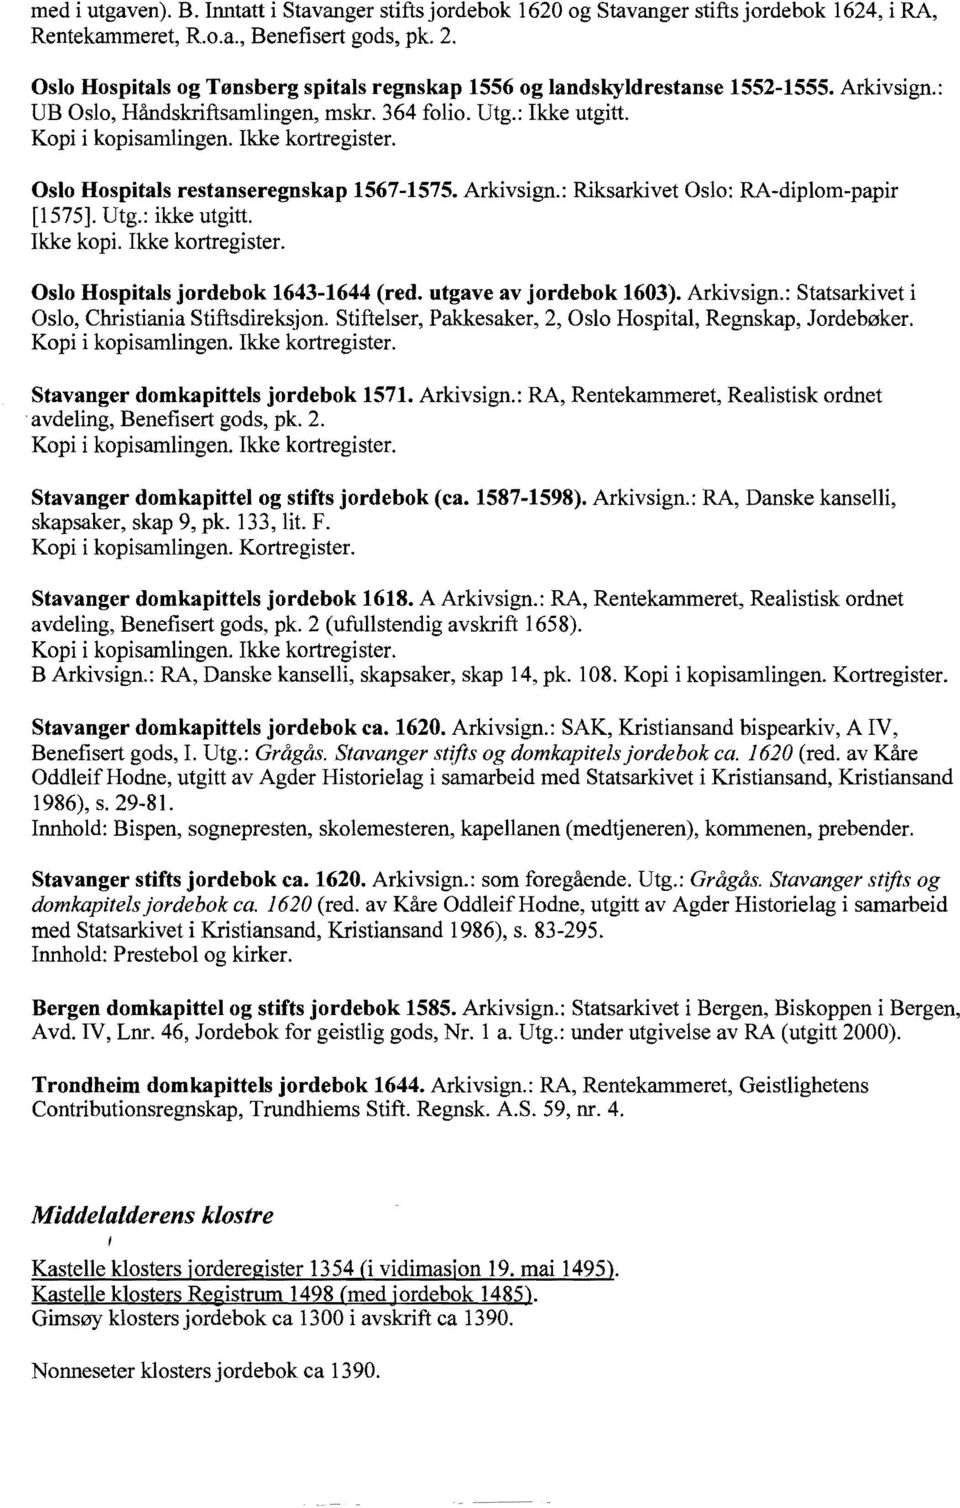 Oslo Hospitals restanseregnskap 1567-1575. Arkivsign.: Riksarkivet Oslo: RA-diplom-papir [1575]. Utg.: ikke utgitt. Ikke kortregister. Oslo Hospitals jordebok 1643-1644 (red. utgave av jordebok 1603).